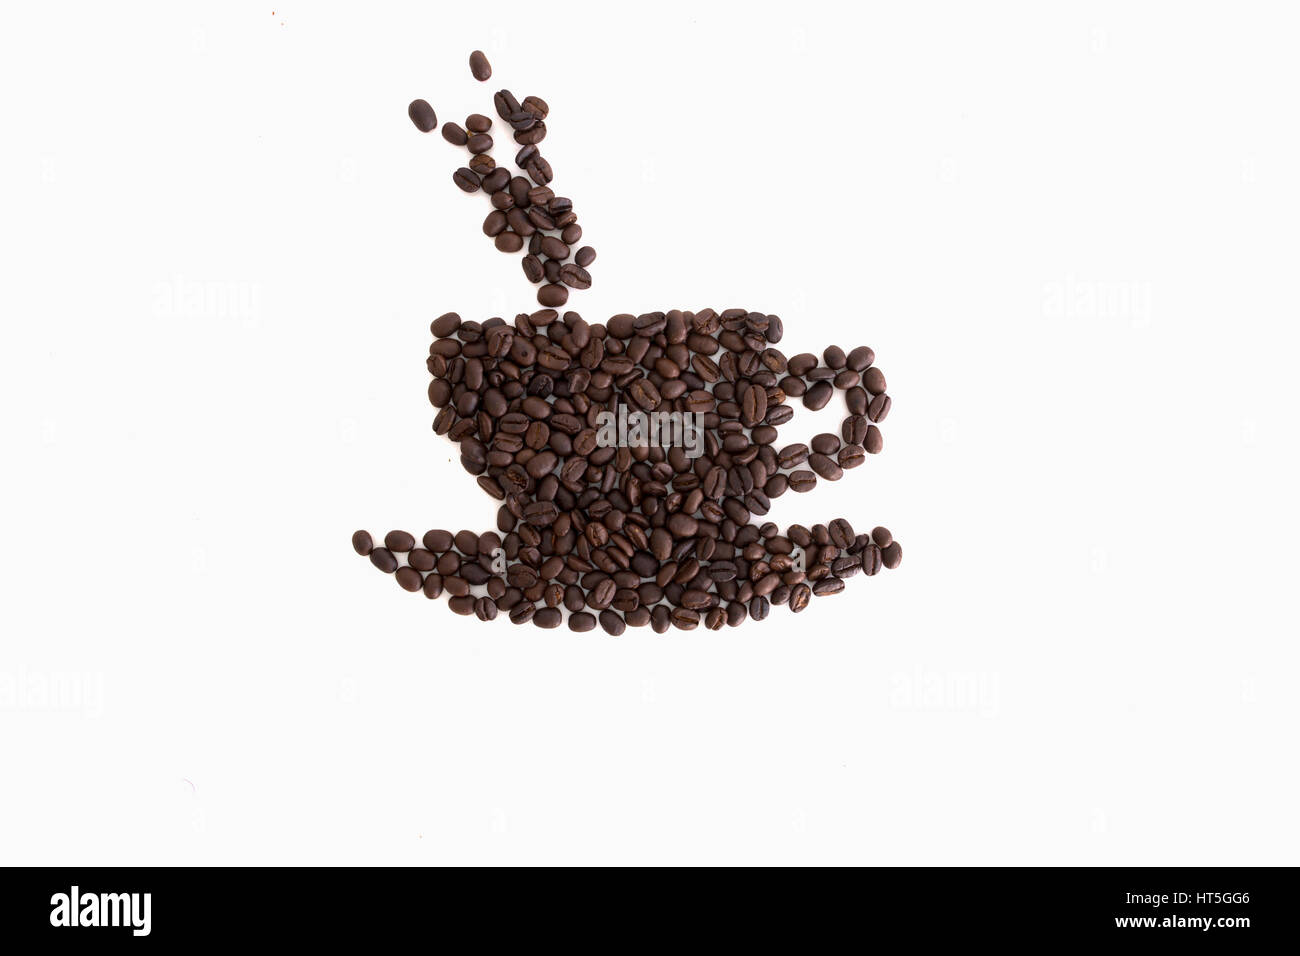 Geröstete Kaffeebohnen in der Form einer Tasse und Untertasse auf einer weißen Fläche gelegt Stockfoto